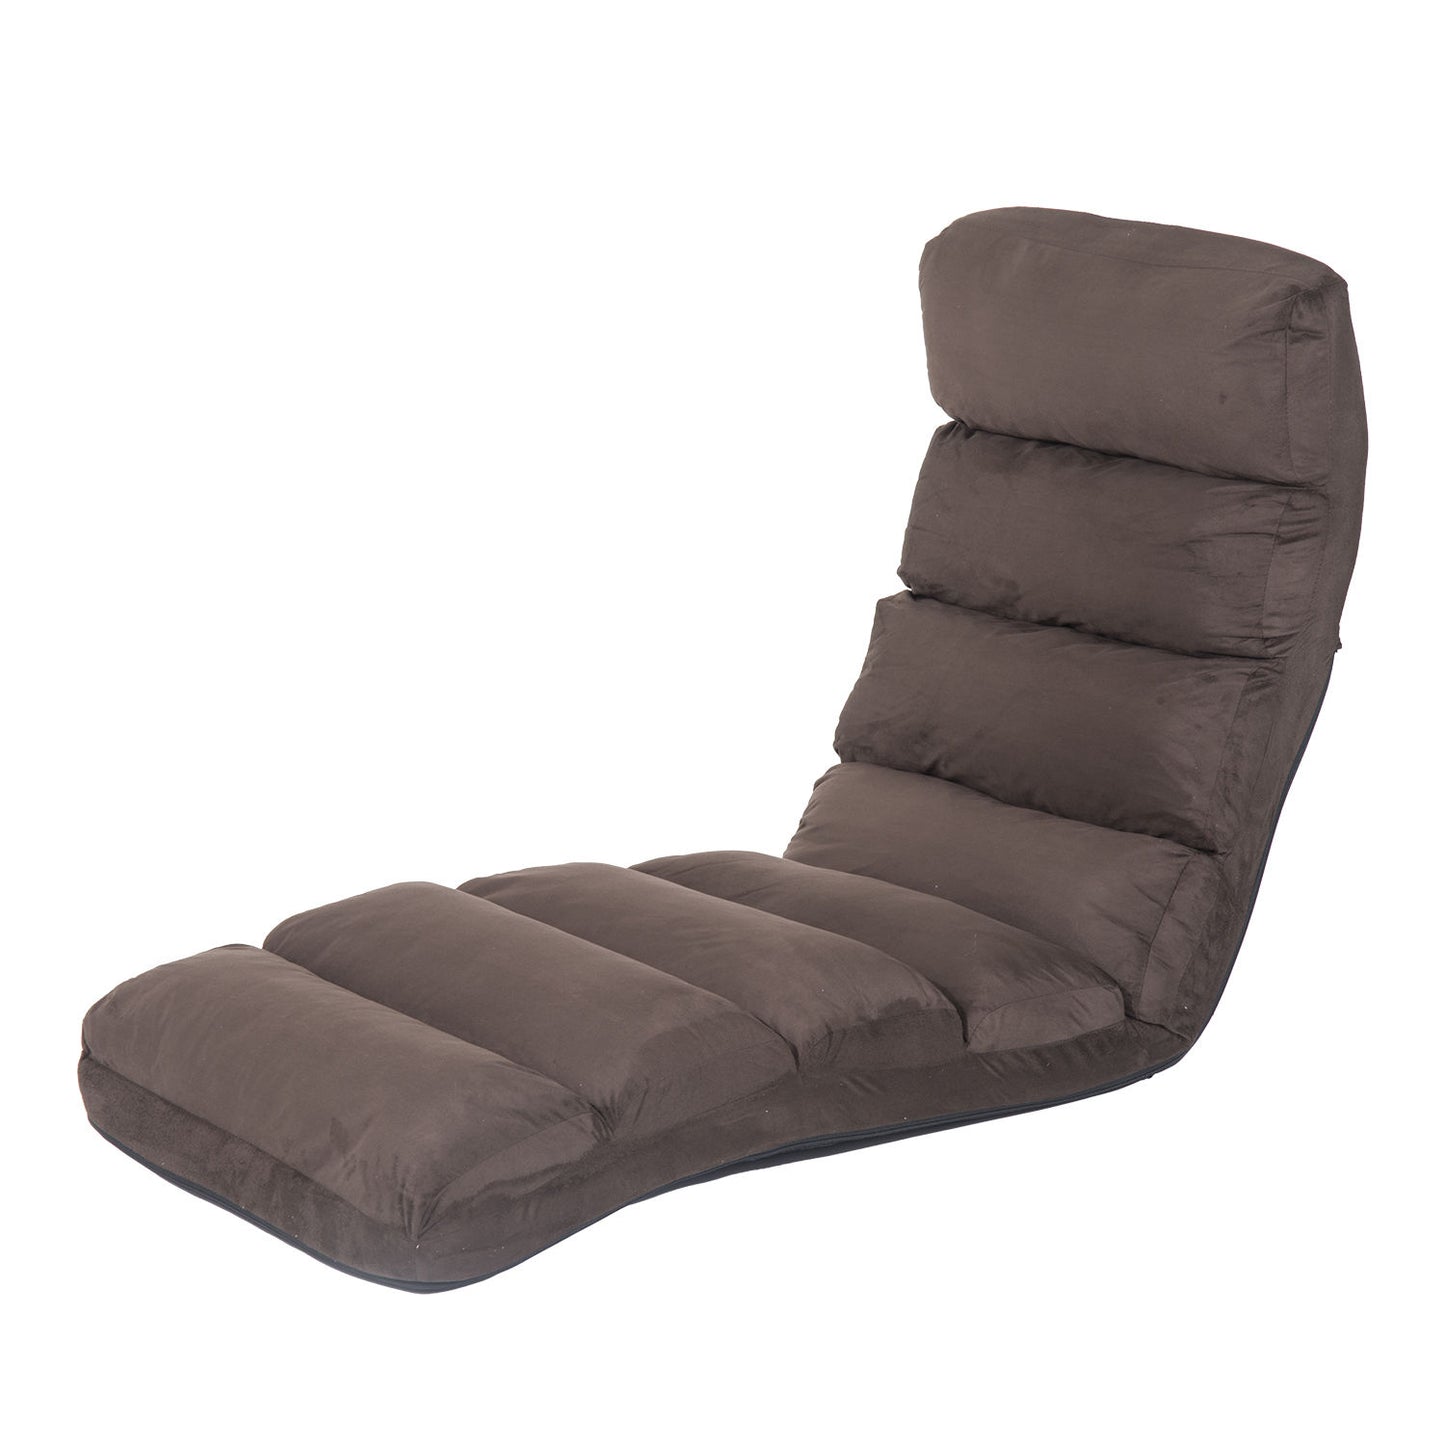 HOMCOM Folding Floor Sofa Bed Adjustable Lounger Sleeper Futon Mattress Chair W/Pillow-Brown